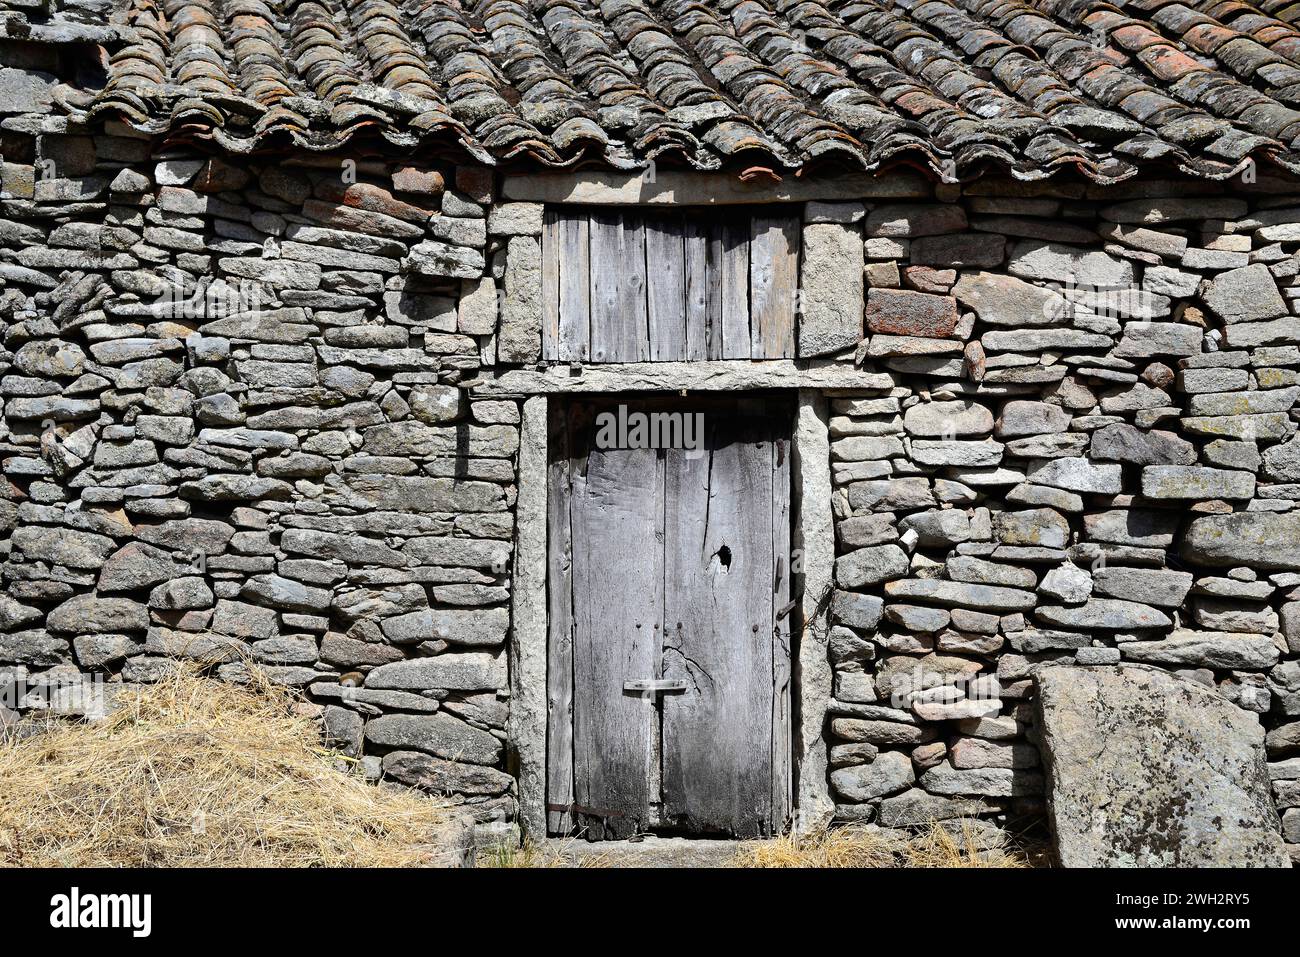 Fornillos de Fermoselle, Villar del Buey municipality. Traditional architecture. Zamora province, Castilla y Leon, Spain. Stock Photo